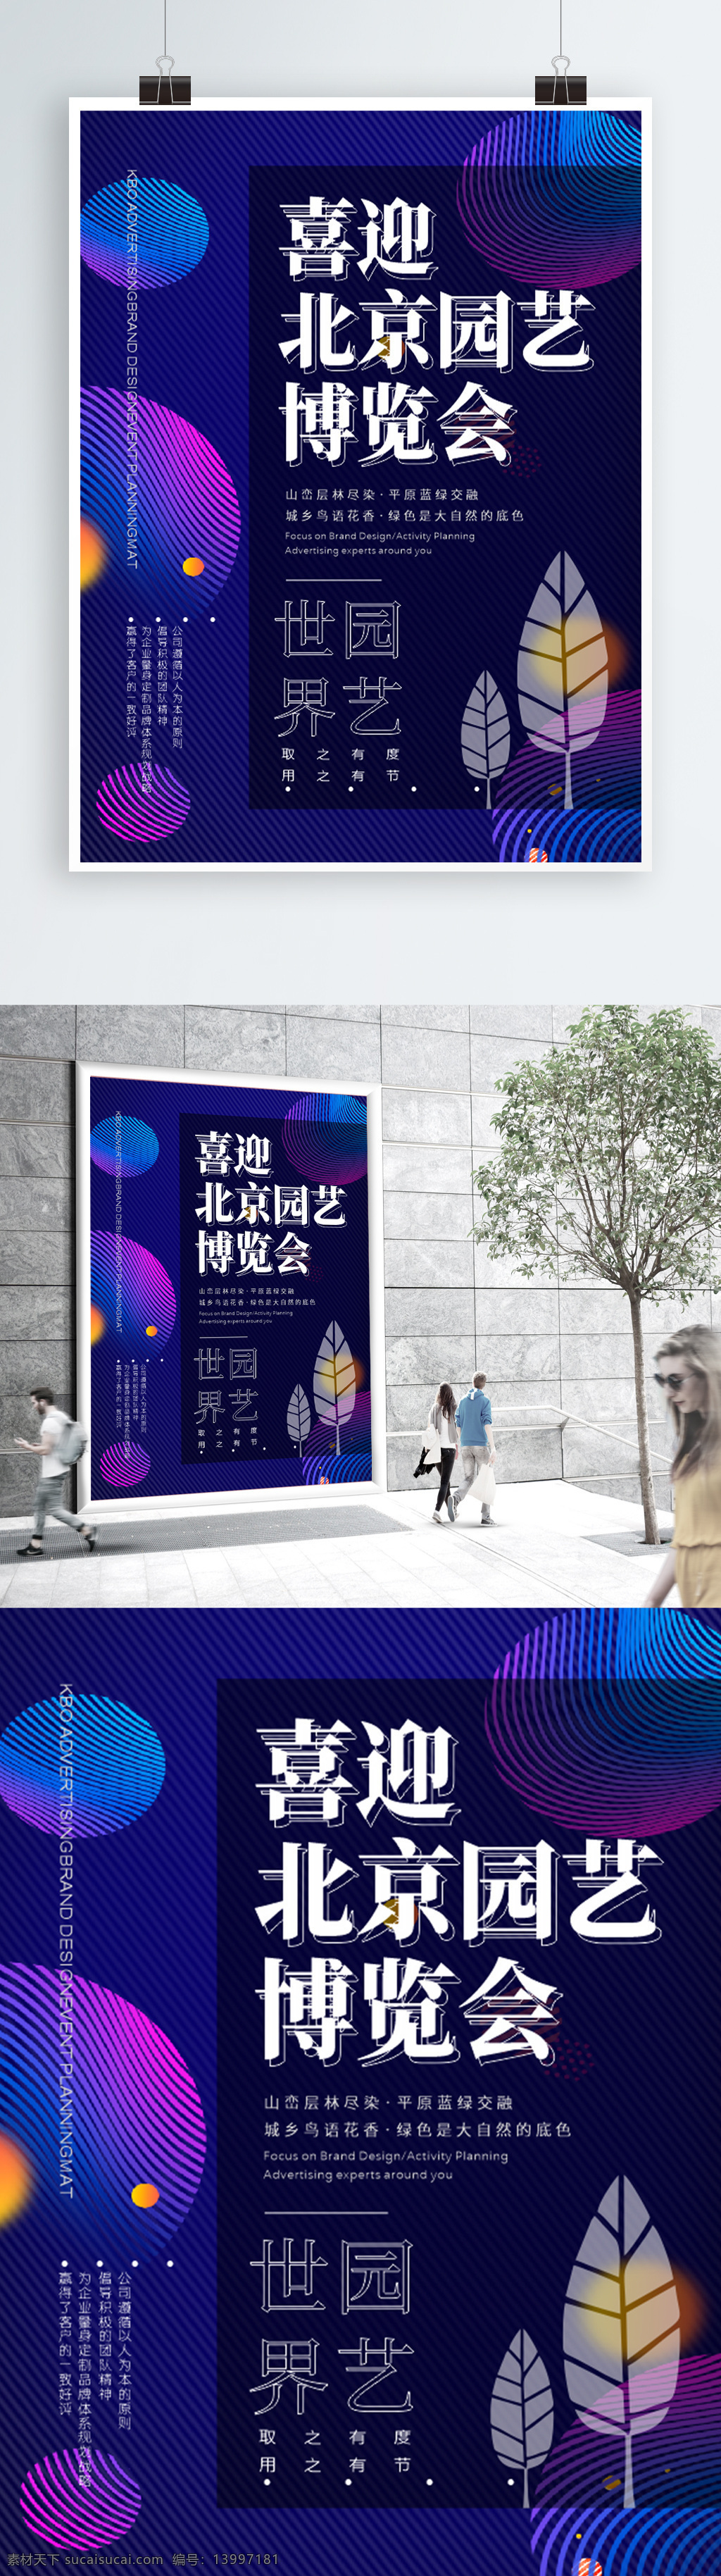 北京 世界园艺博览会 大气 版式 科技感海报 科技封面设计 园艺海报 动感海报 动感线条 树叶海报 创意几何 创意设计 蓝色 科技